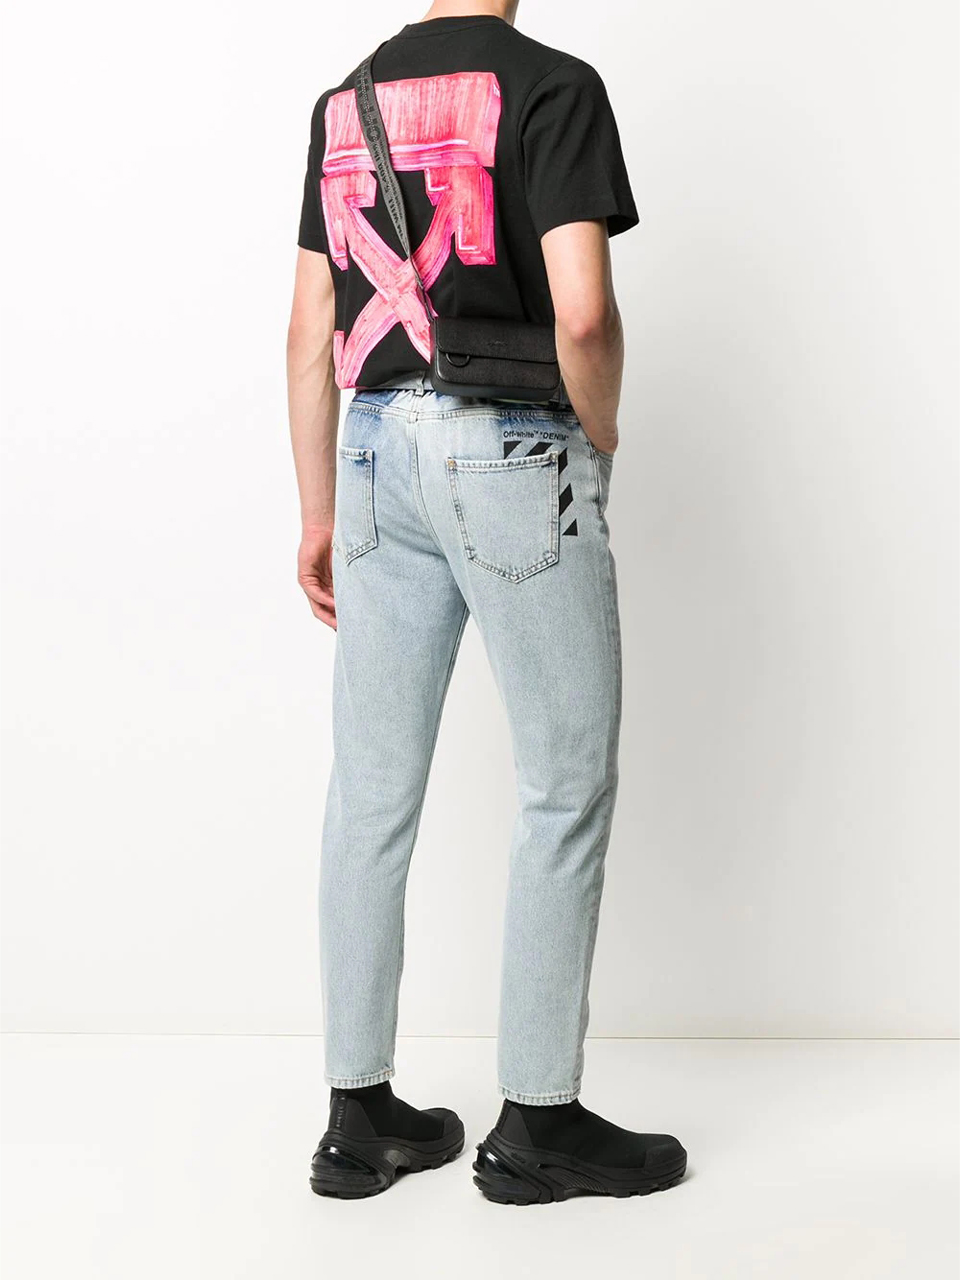 Imagem de: Camiseta Off-White Marker Arrows Preta com Estampa Rosa